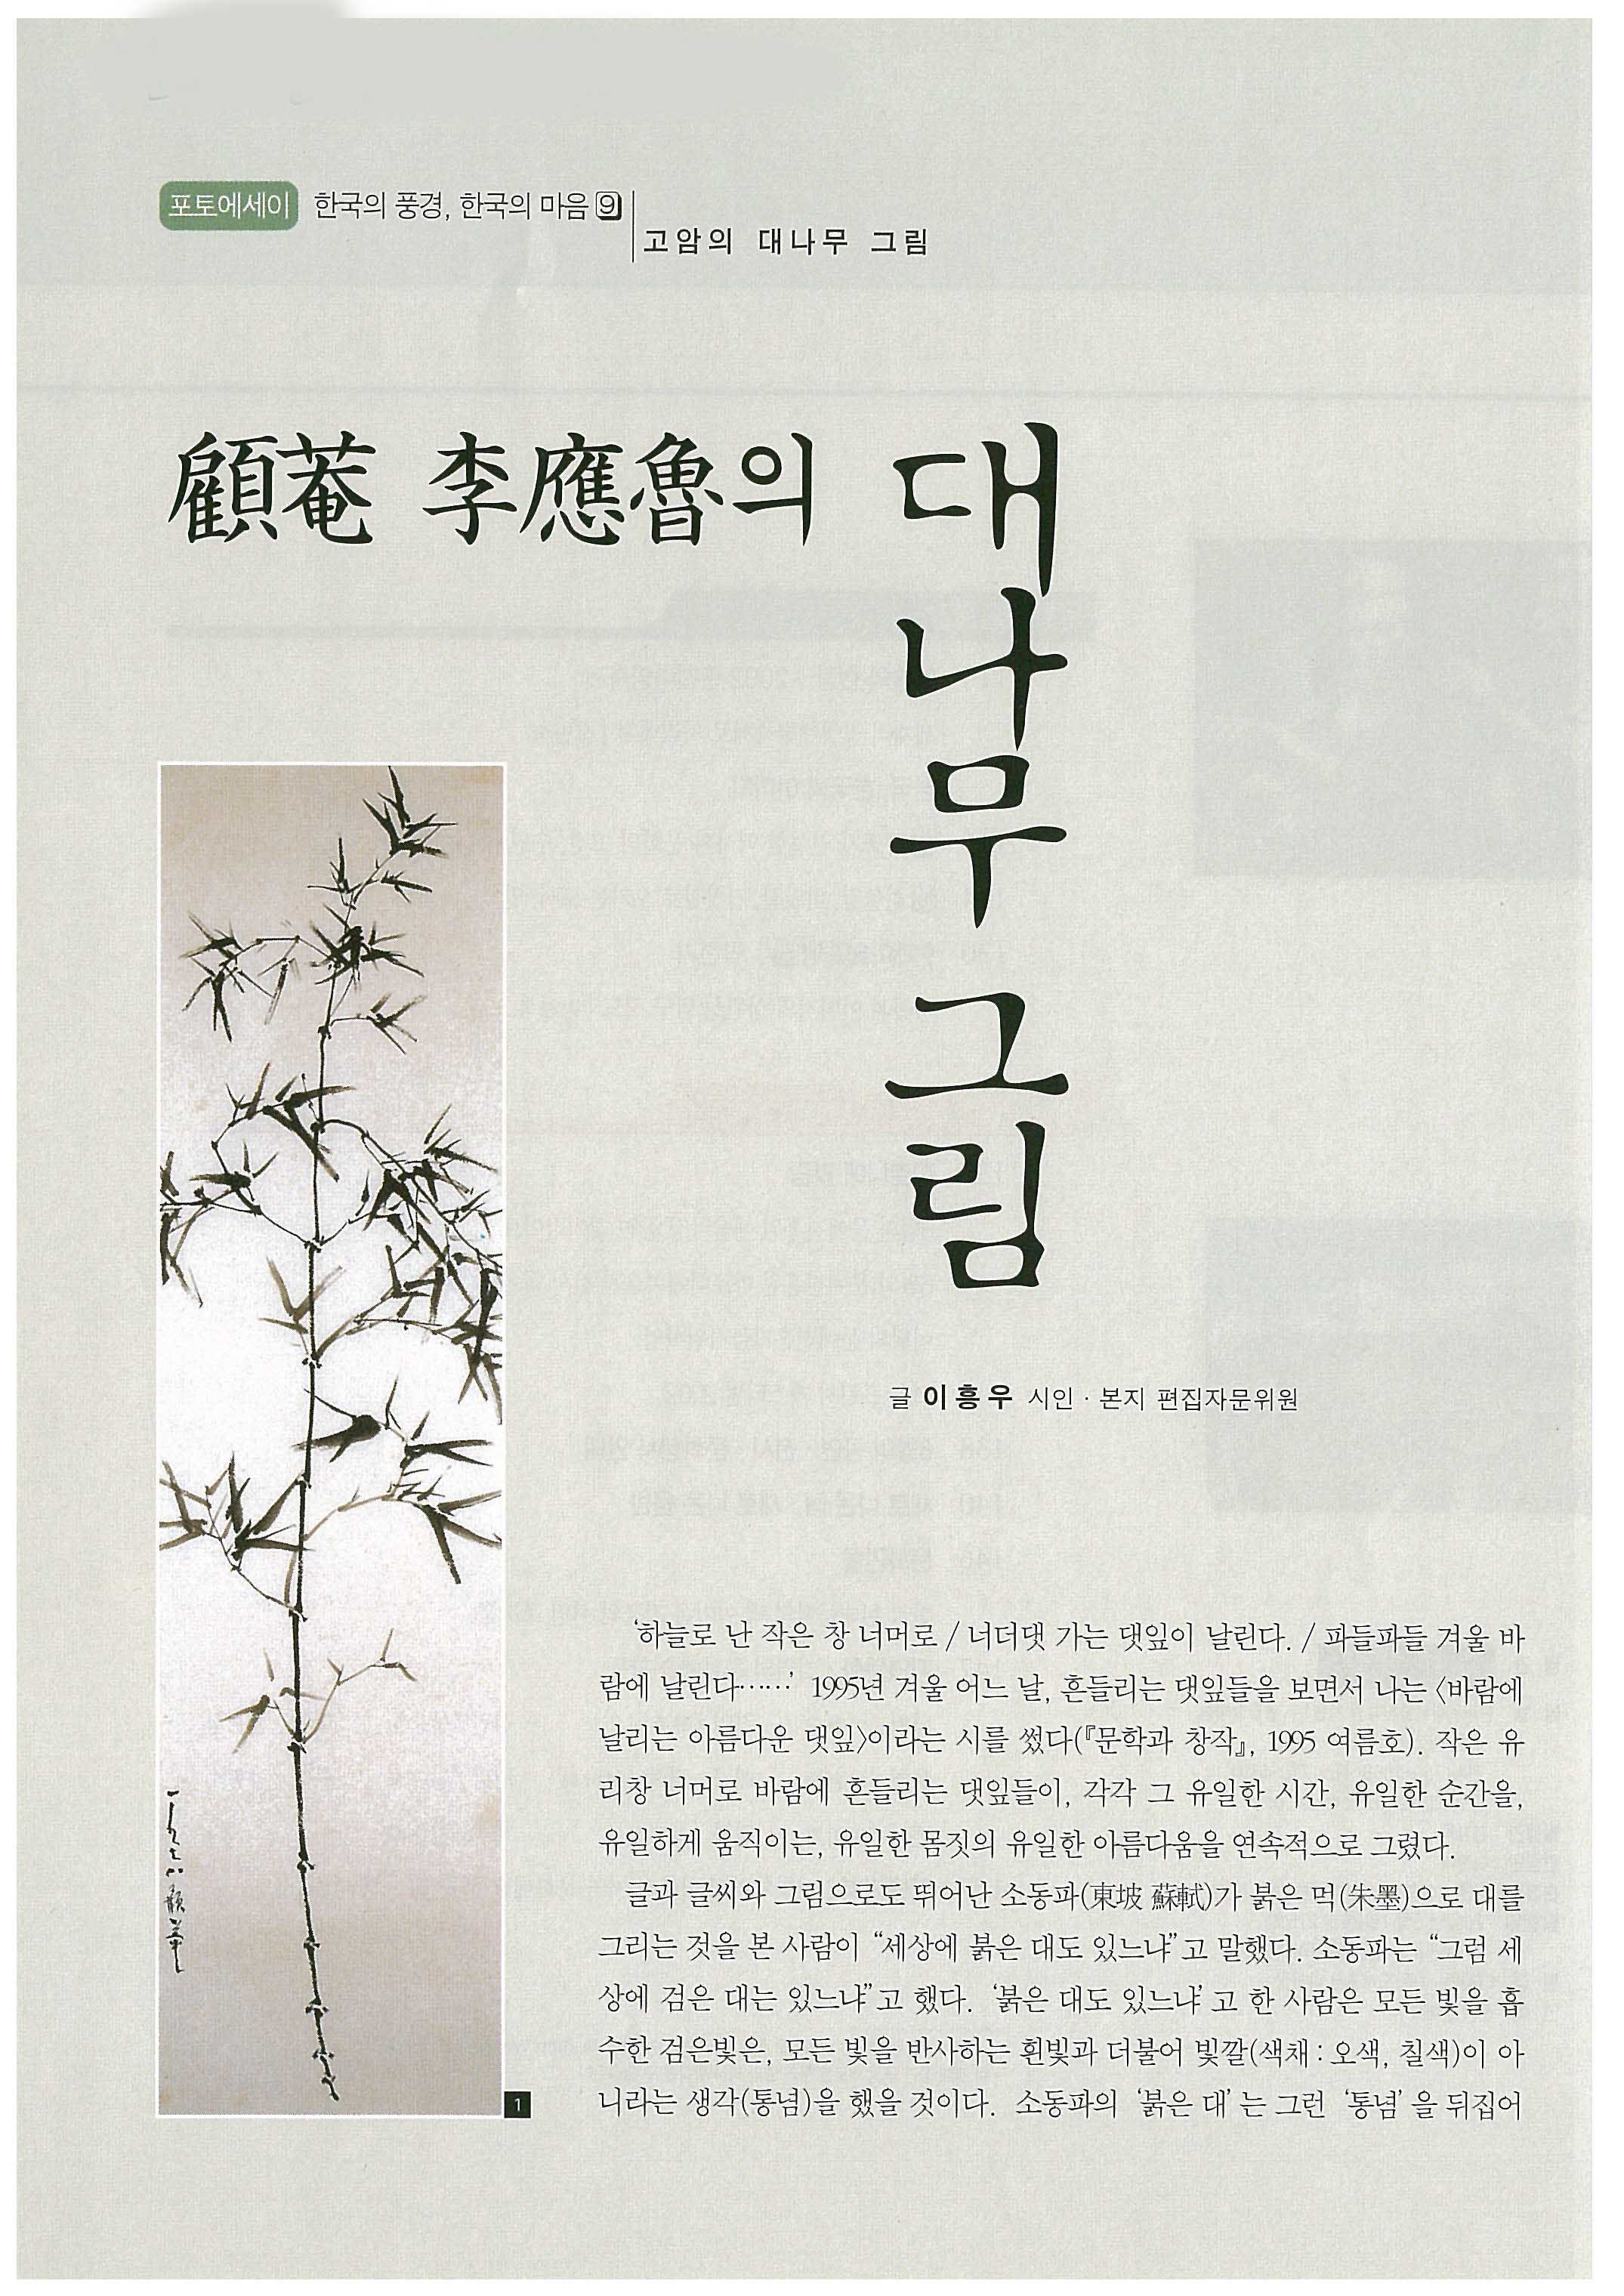 「고암 이응노의 대나무 그림」, 『문화예술』